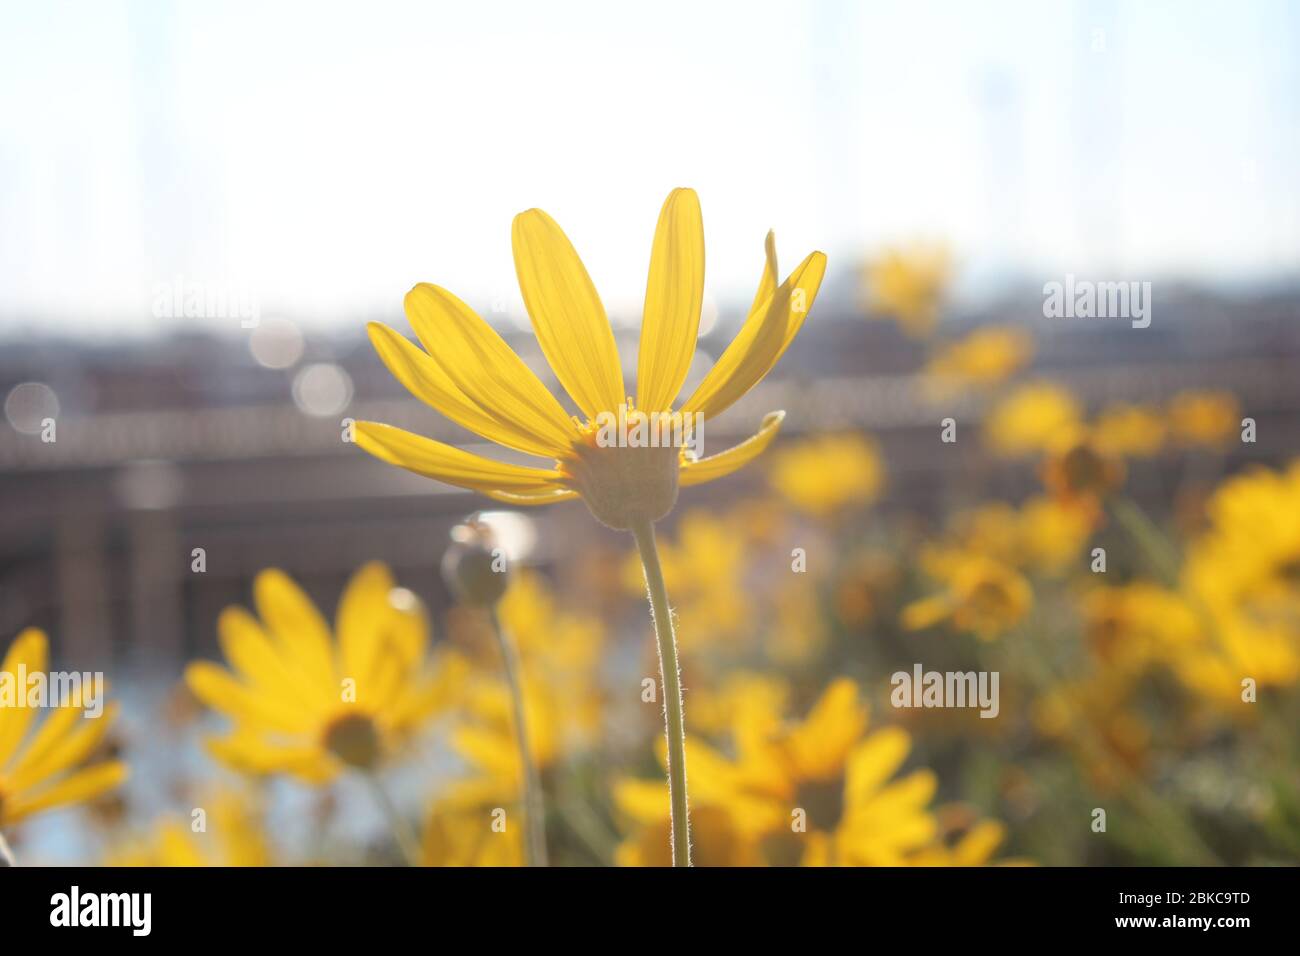 Nahaufnahme einer gelben Gänseblümchen, die der Sonne zugewandt ist, mit anderen im Hintergrund. Stockfoto